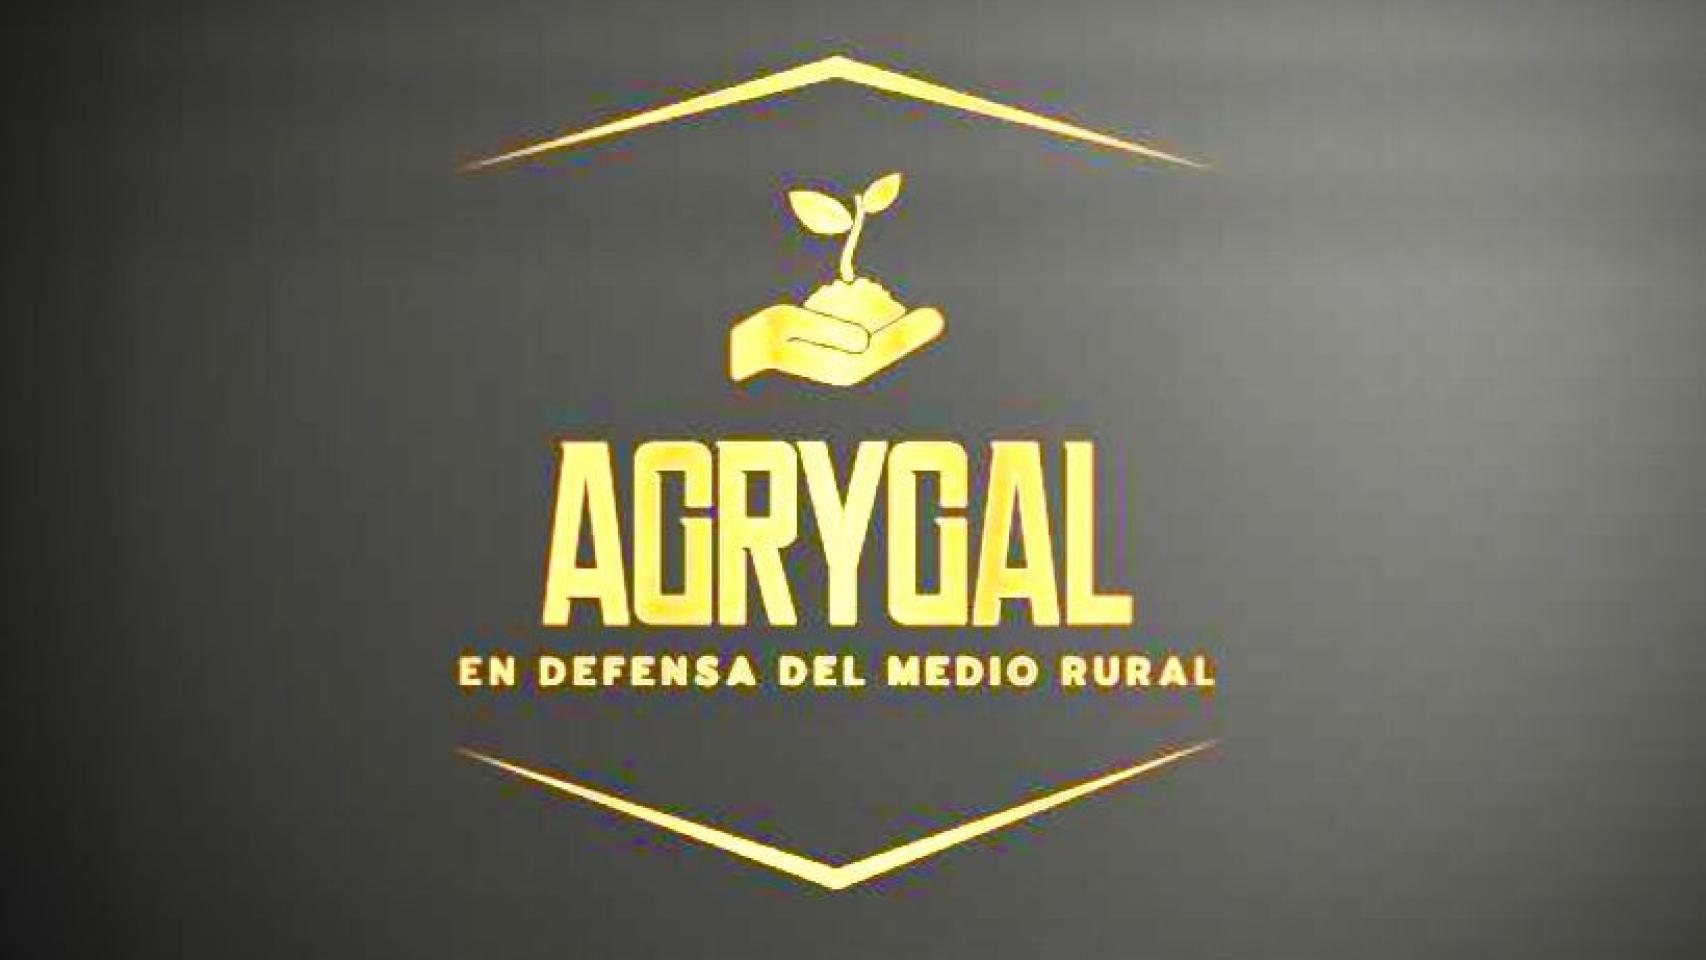 Nuevo logo de Agrygal